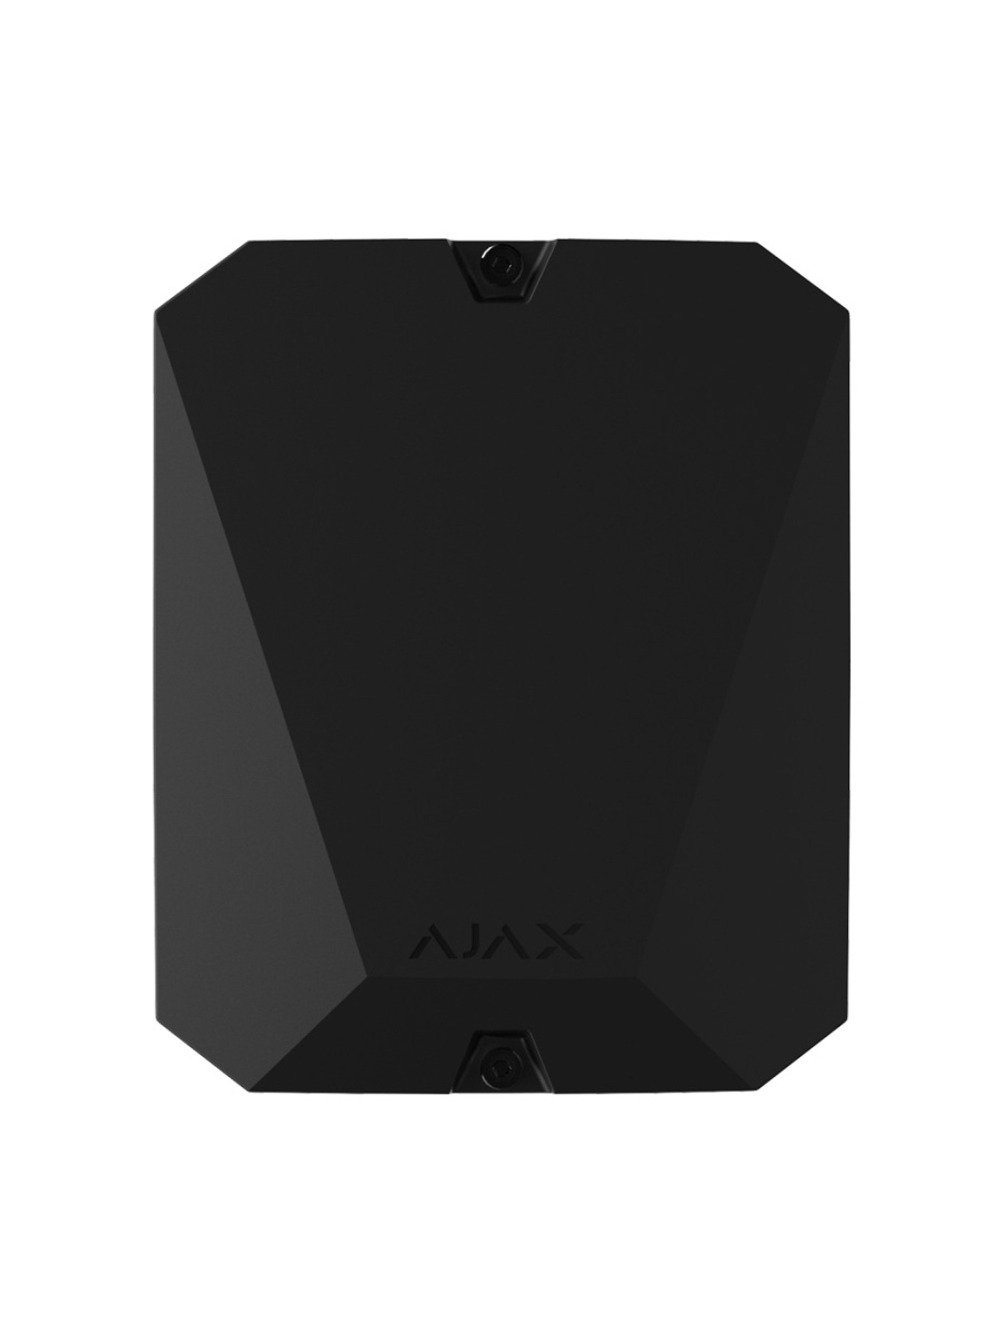 Ajax MultiTransmitter черный